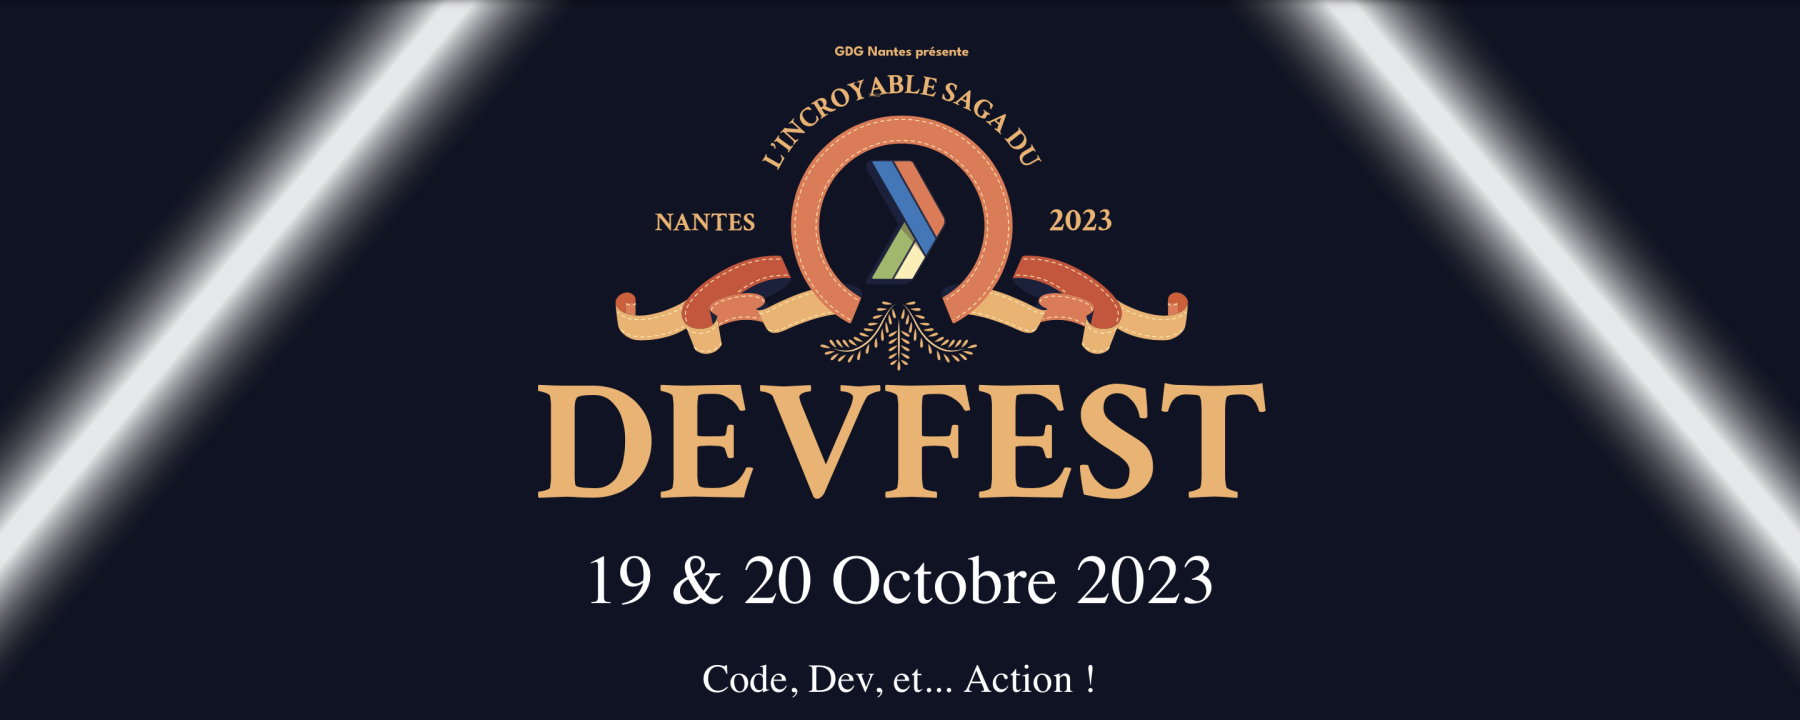 Devfest Nantes 2023